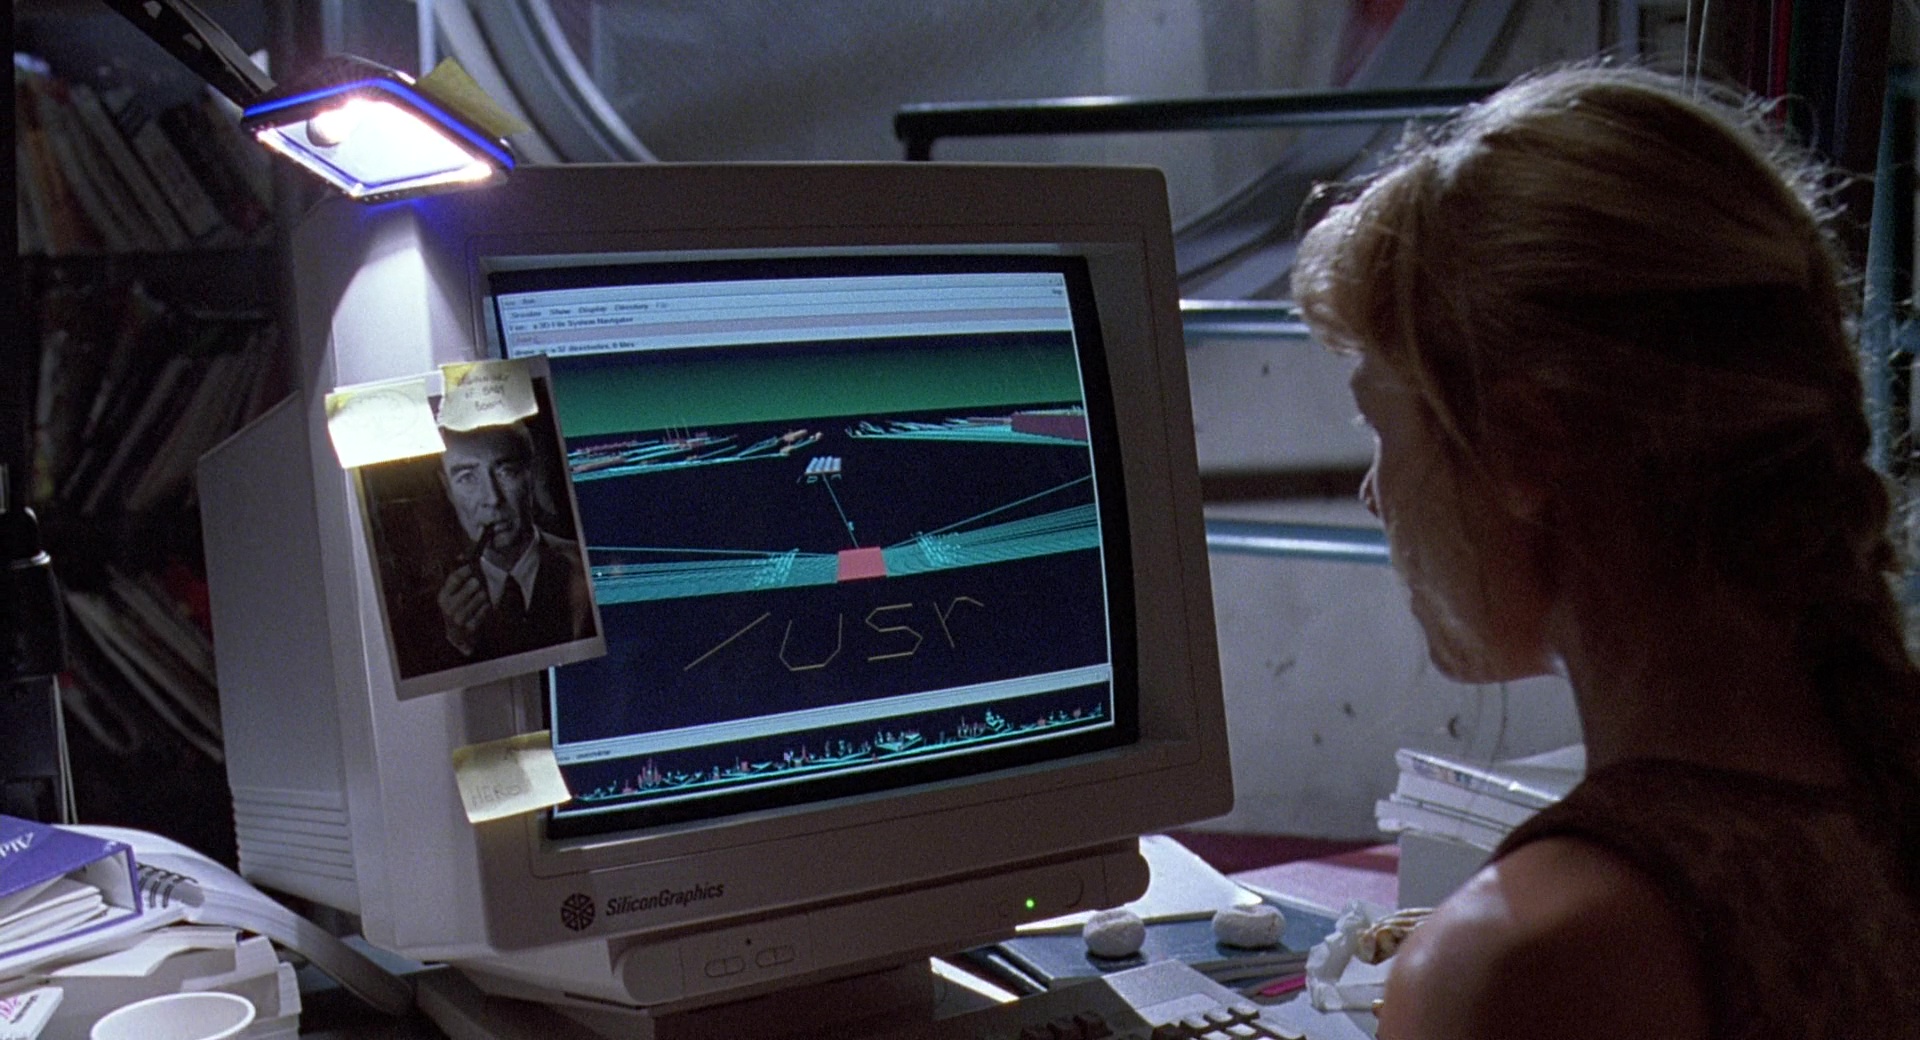 Silicon Graphics Monitor in Jurassic Park (1993) Movie